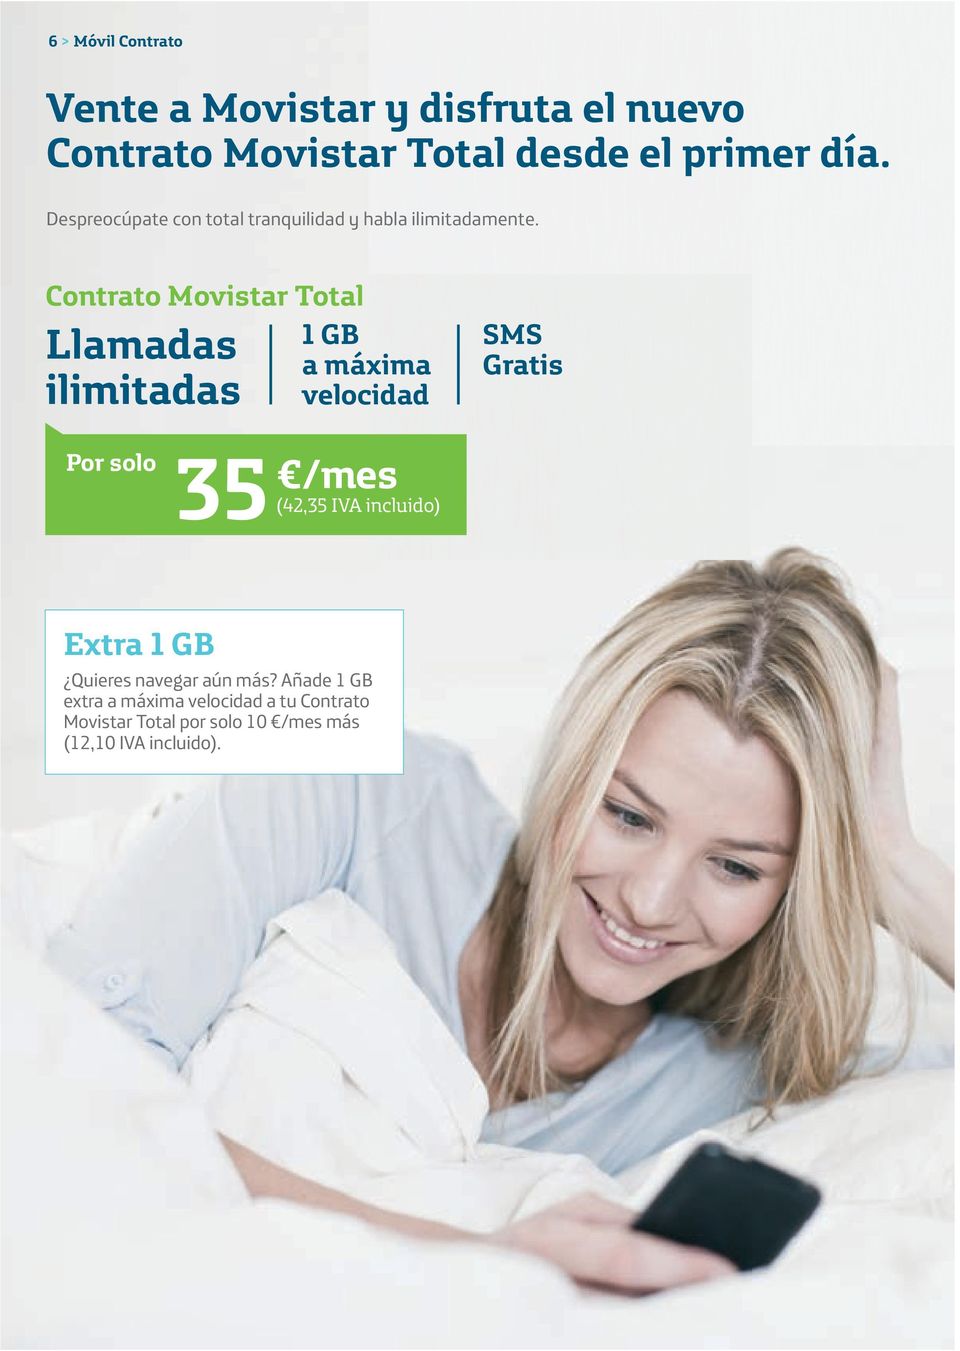 Contrato Movistar Total 1 GB Llamadas ilimitadas Gratis 35 /mes (42,35 IVA incluido) Extra 1 GB Quieres